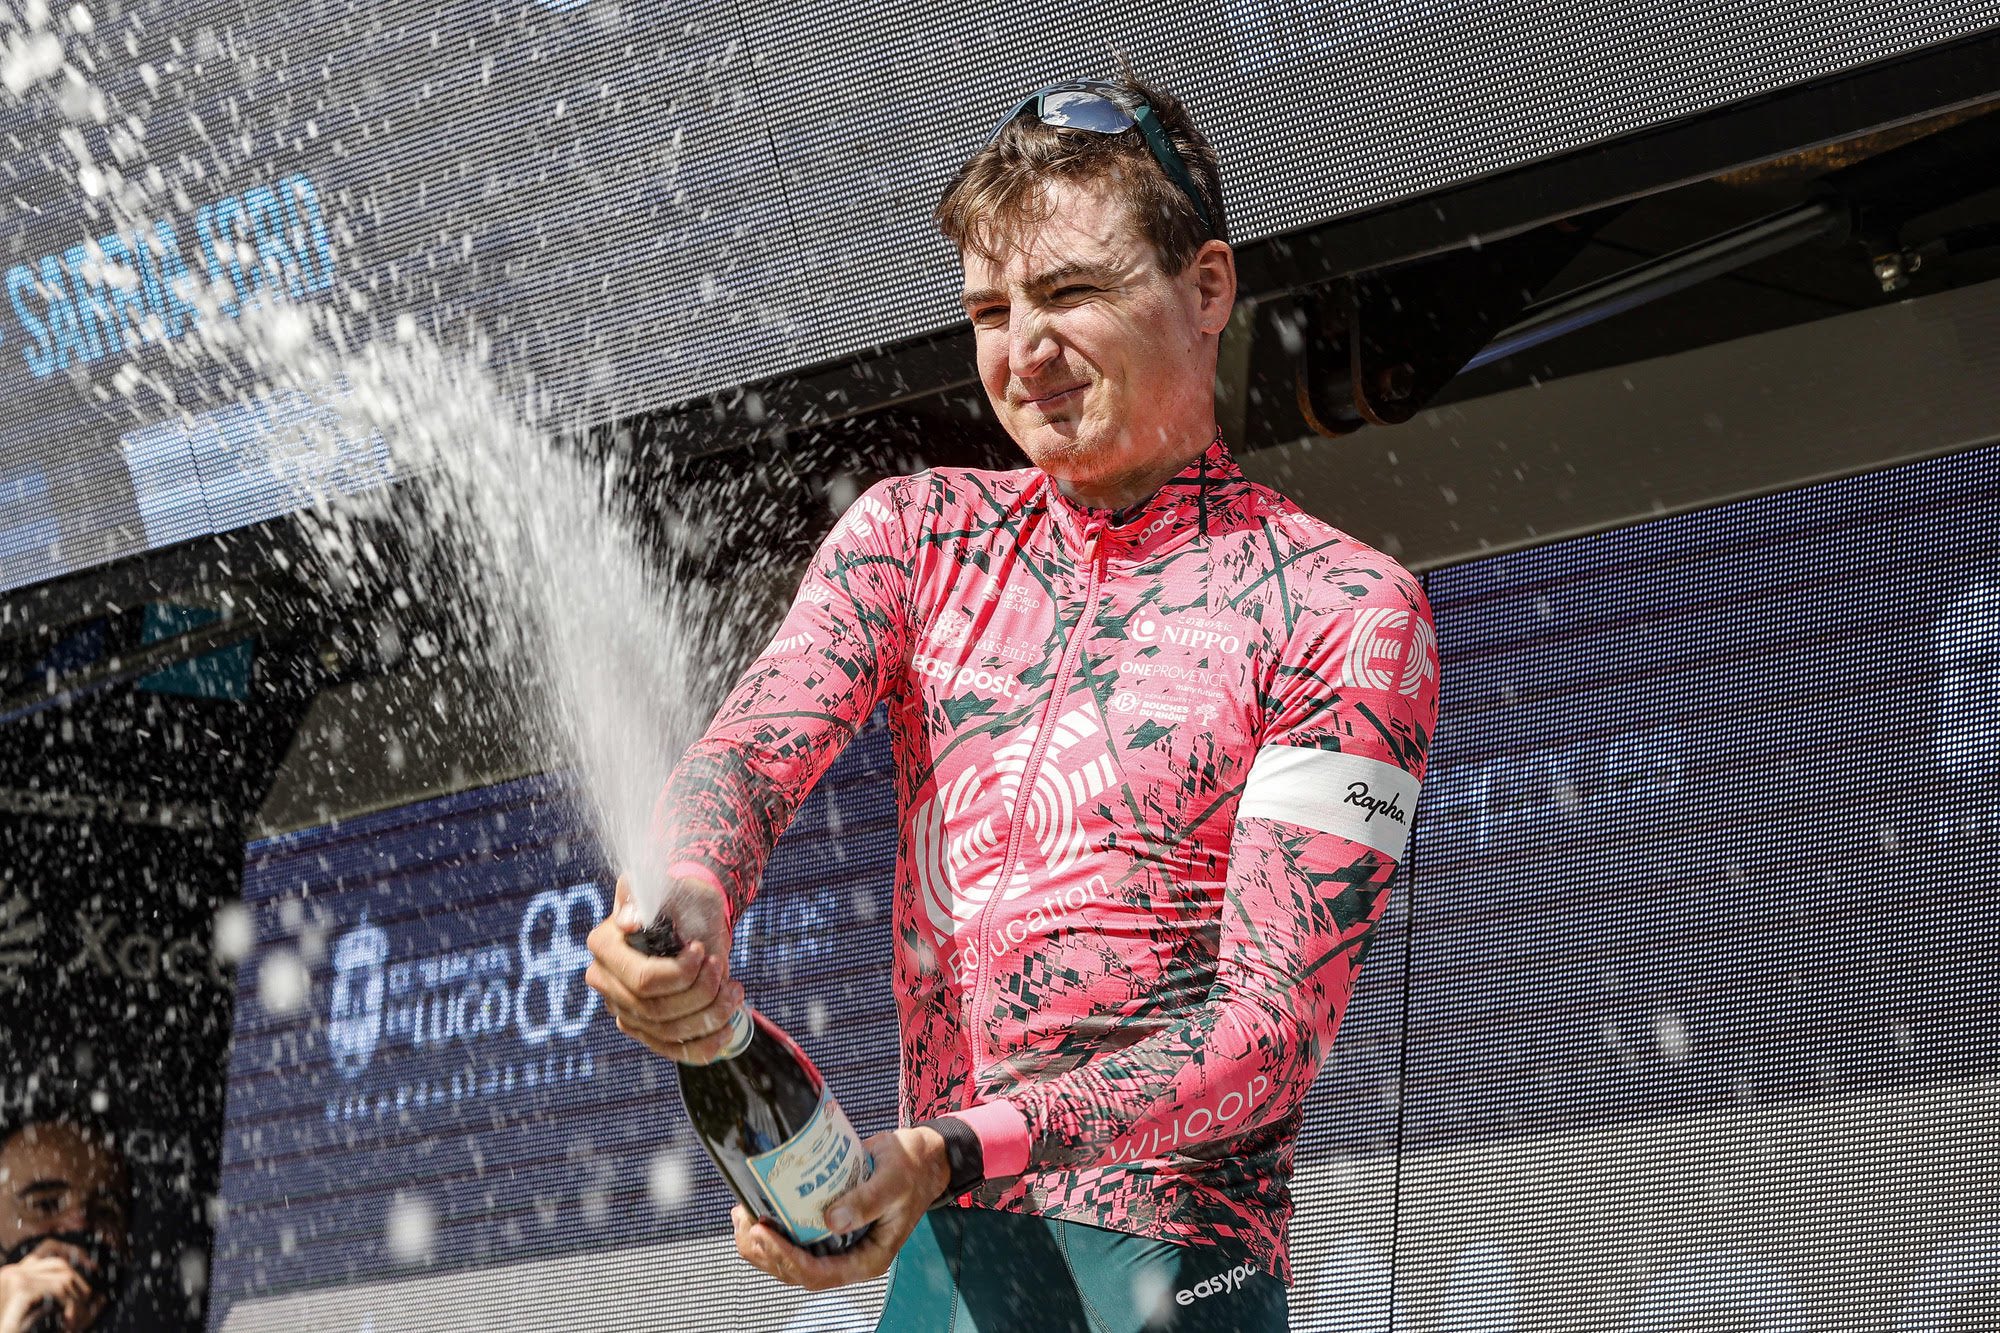 La victoria de Padun trasciende el deporte: “Quiero compartirlo con todos  mis compatriotas” – Ciclismo Internacional